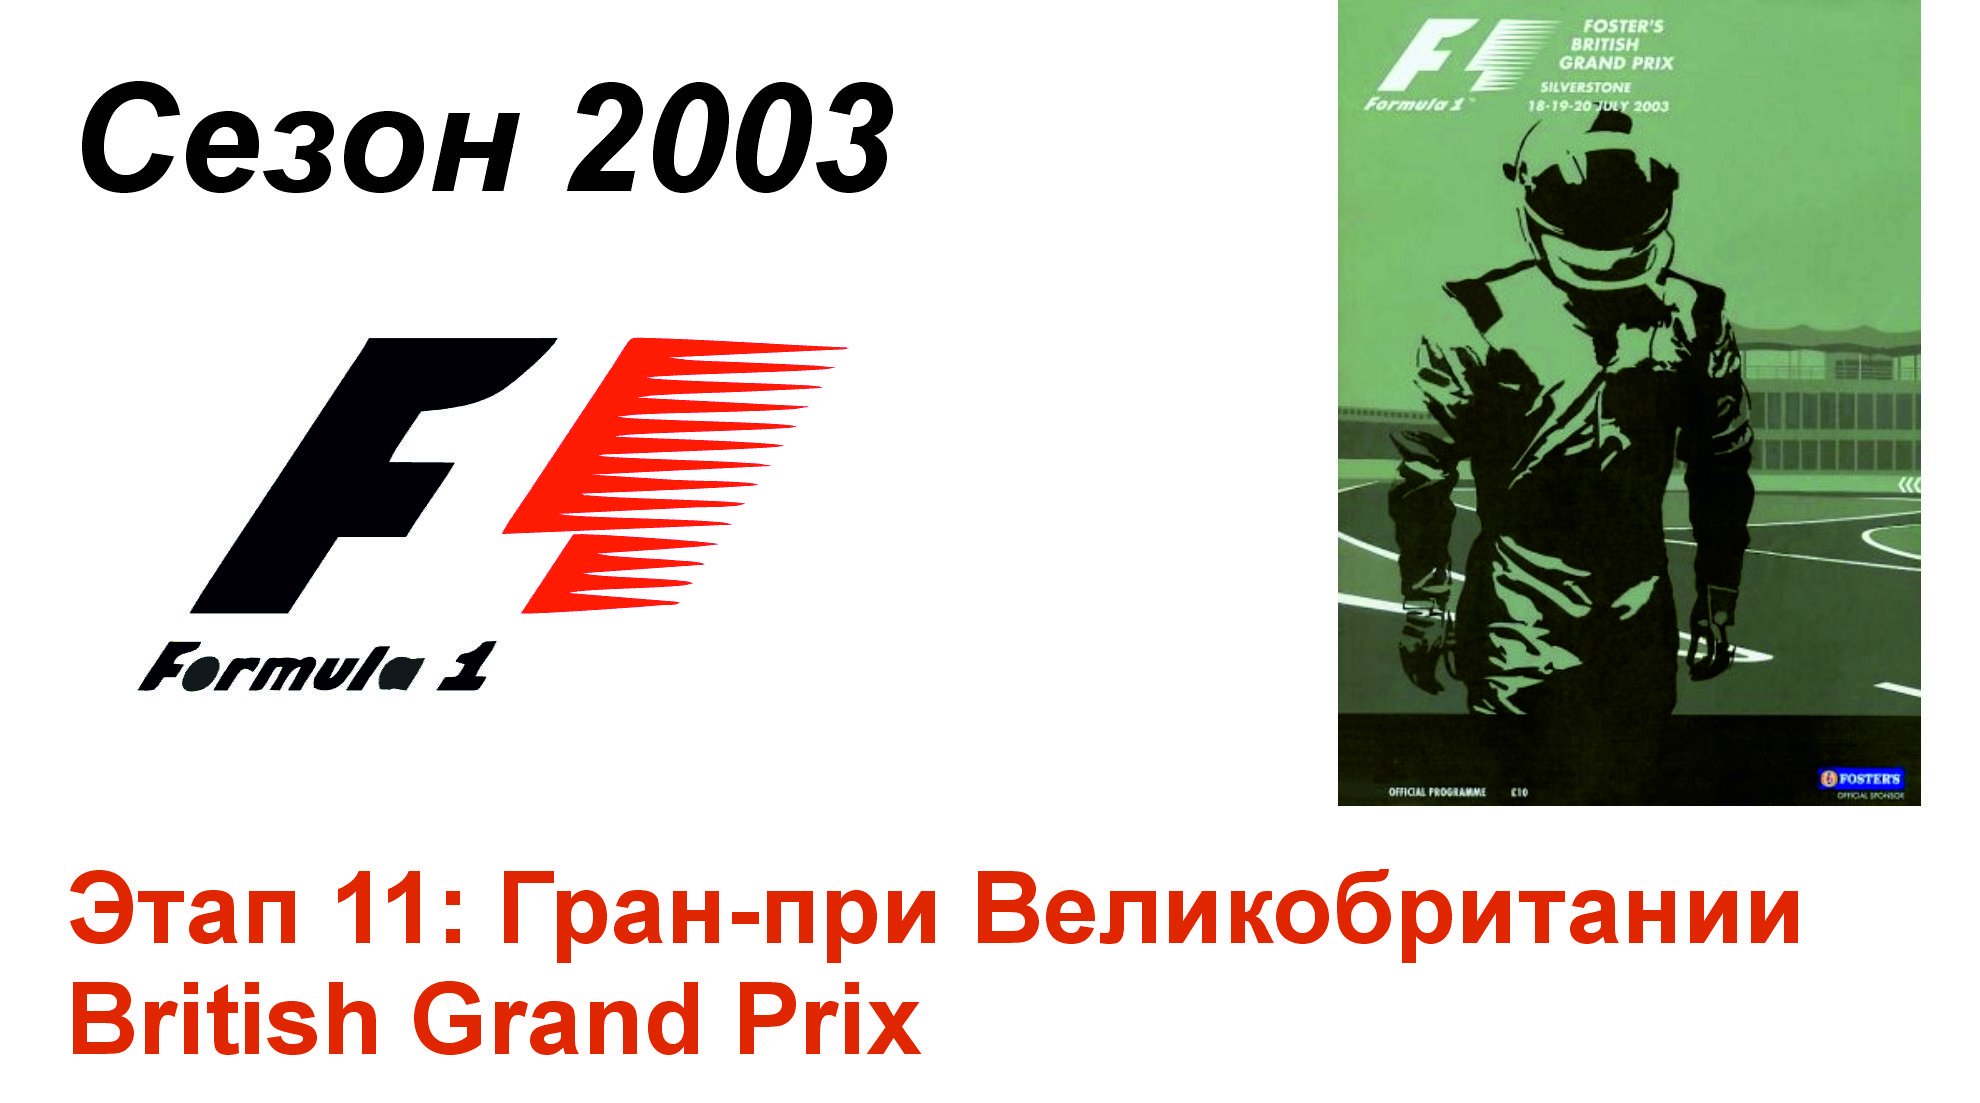 Формула-1 / Formula-1 (2003). Этап 11: Гран-при Великобритании (Рус+Англ/Rus+Eng)